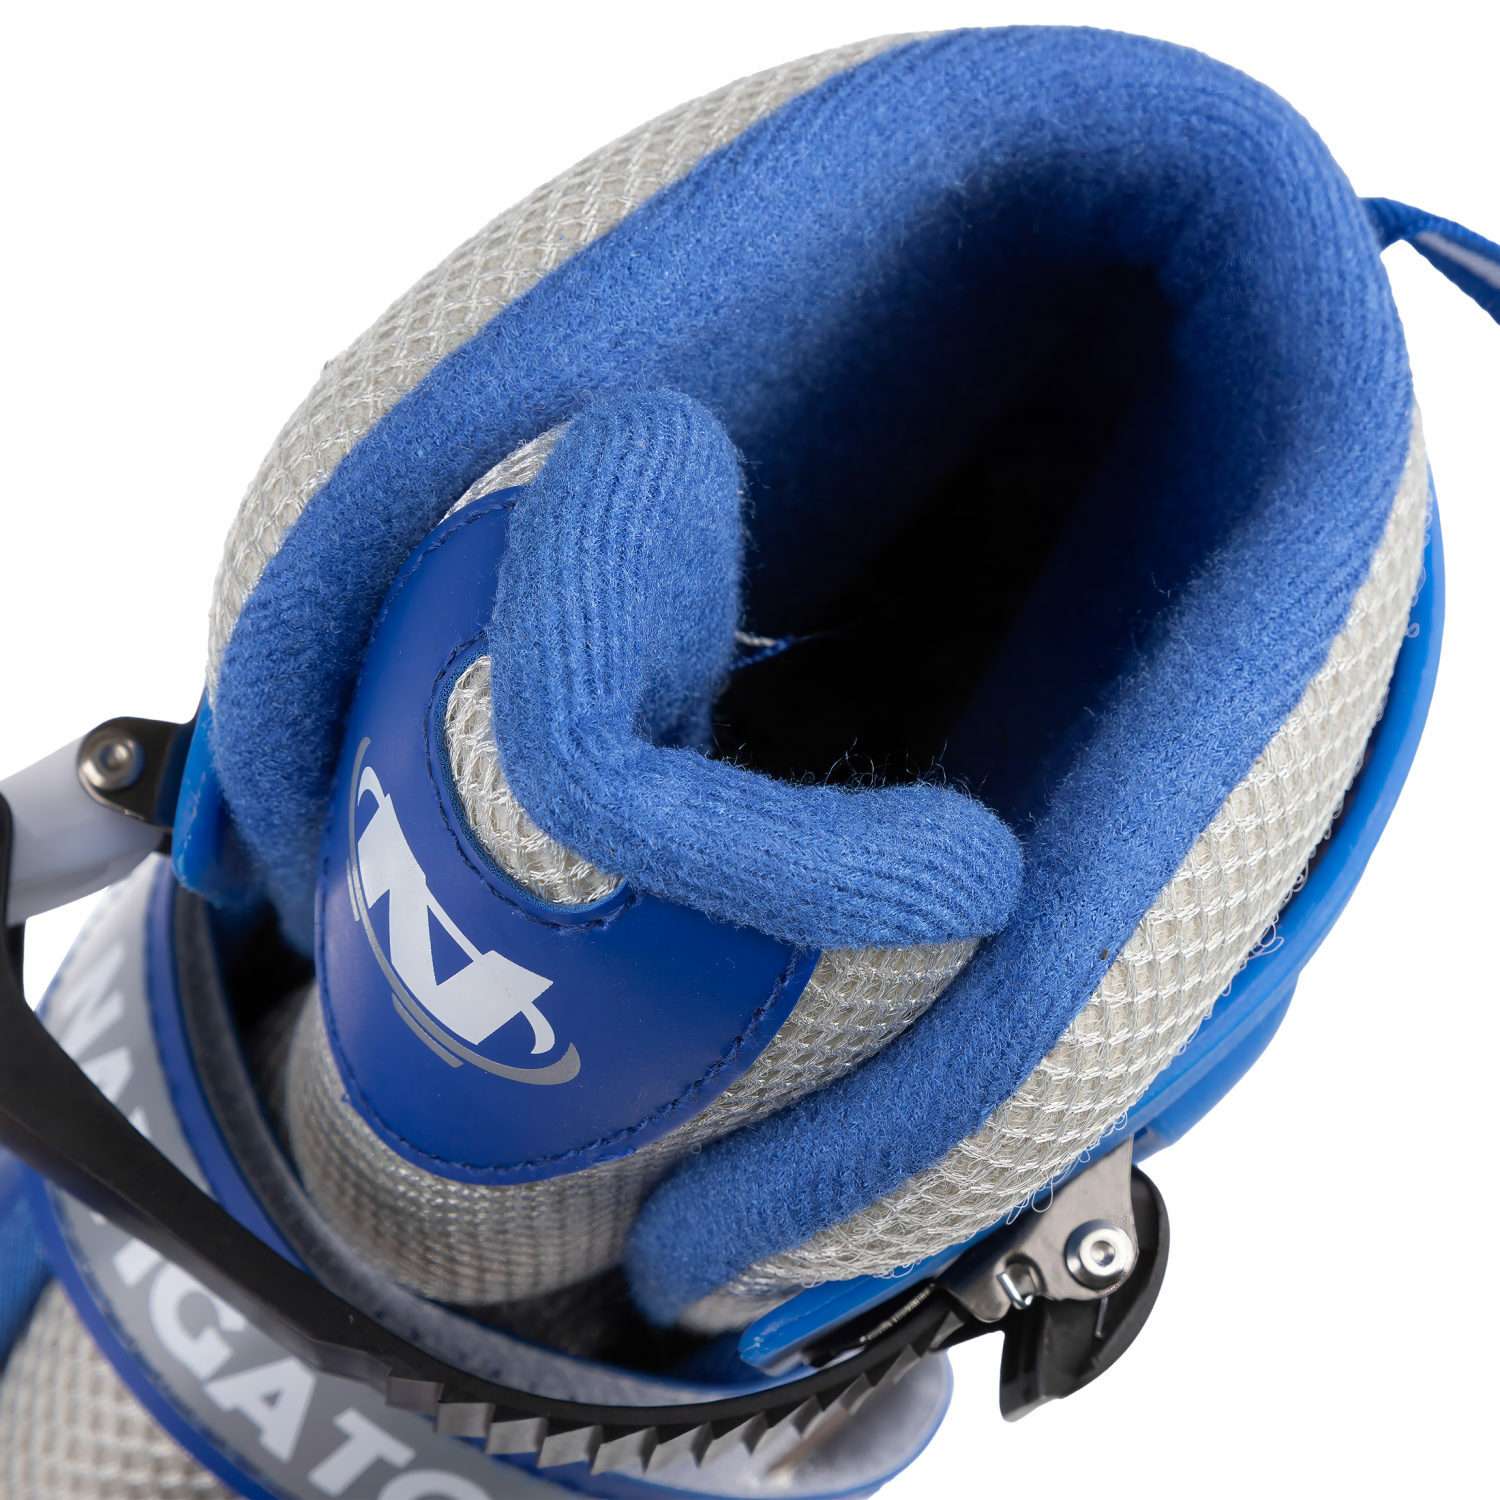 Ролики Navigator детские раздвижные 30 - 33 размер с защитой и шлемом синий - фото 14